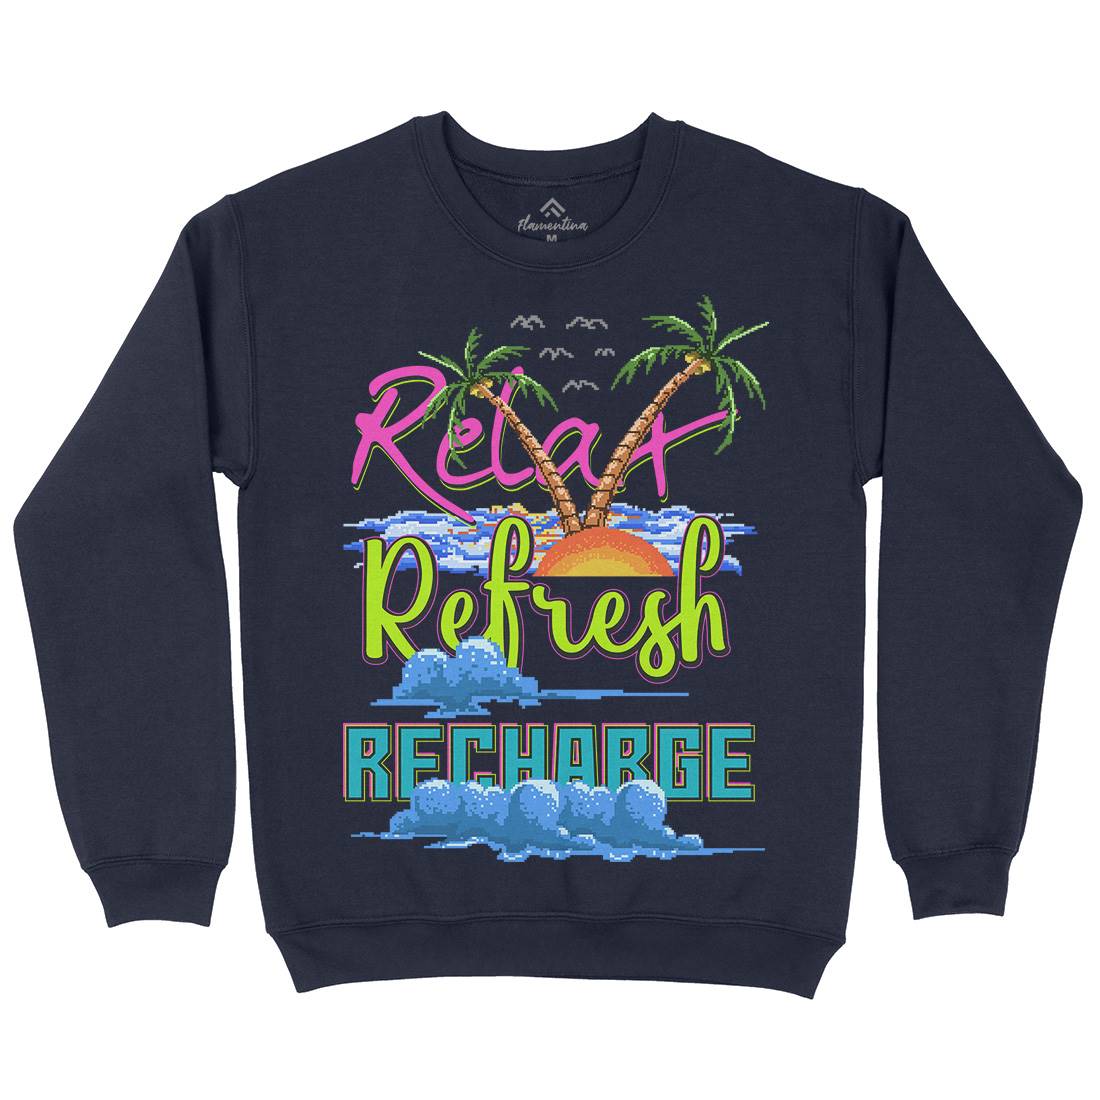 Relax Refresh Recharge Kids Crew Neck Sweatshirt Nature B952